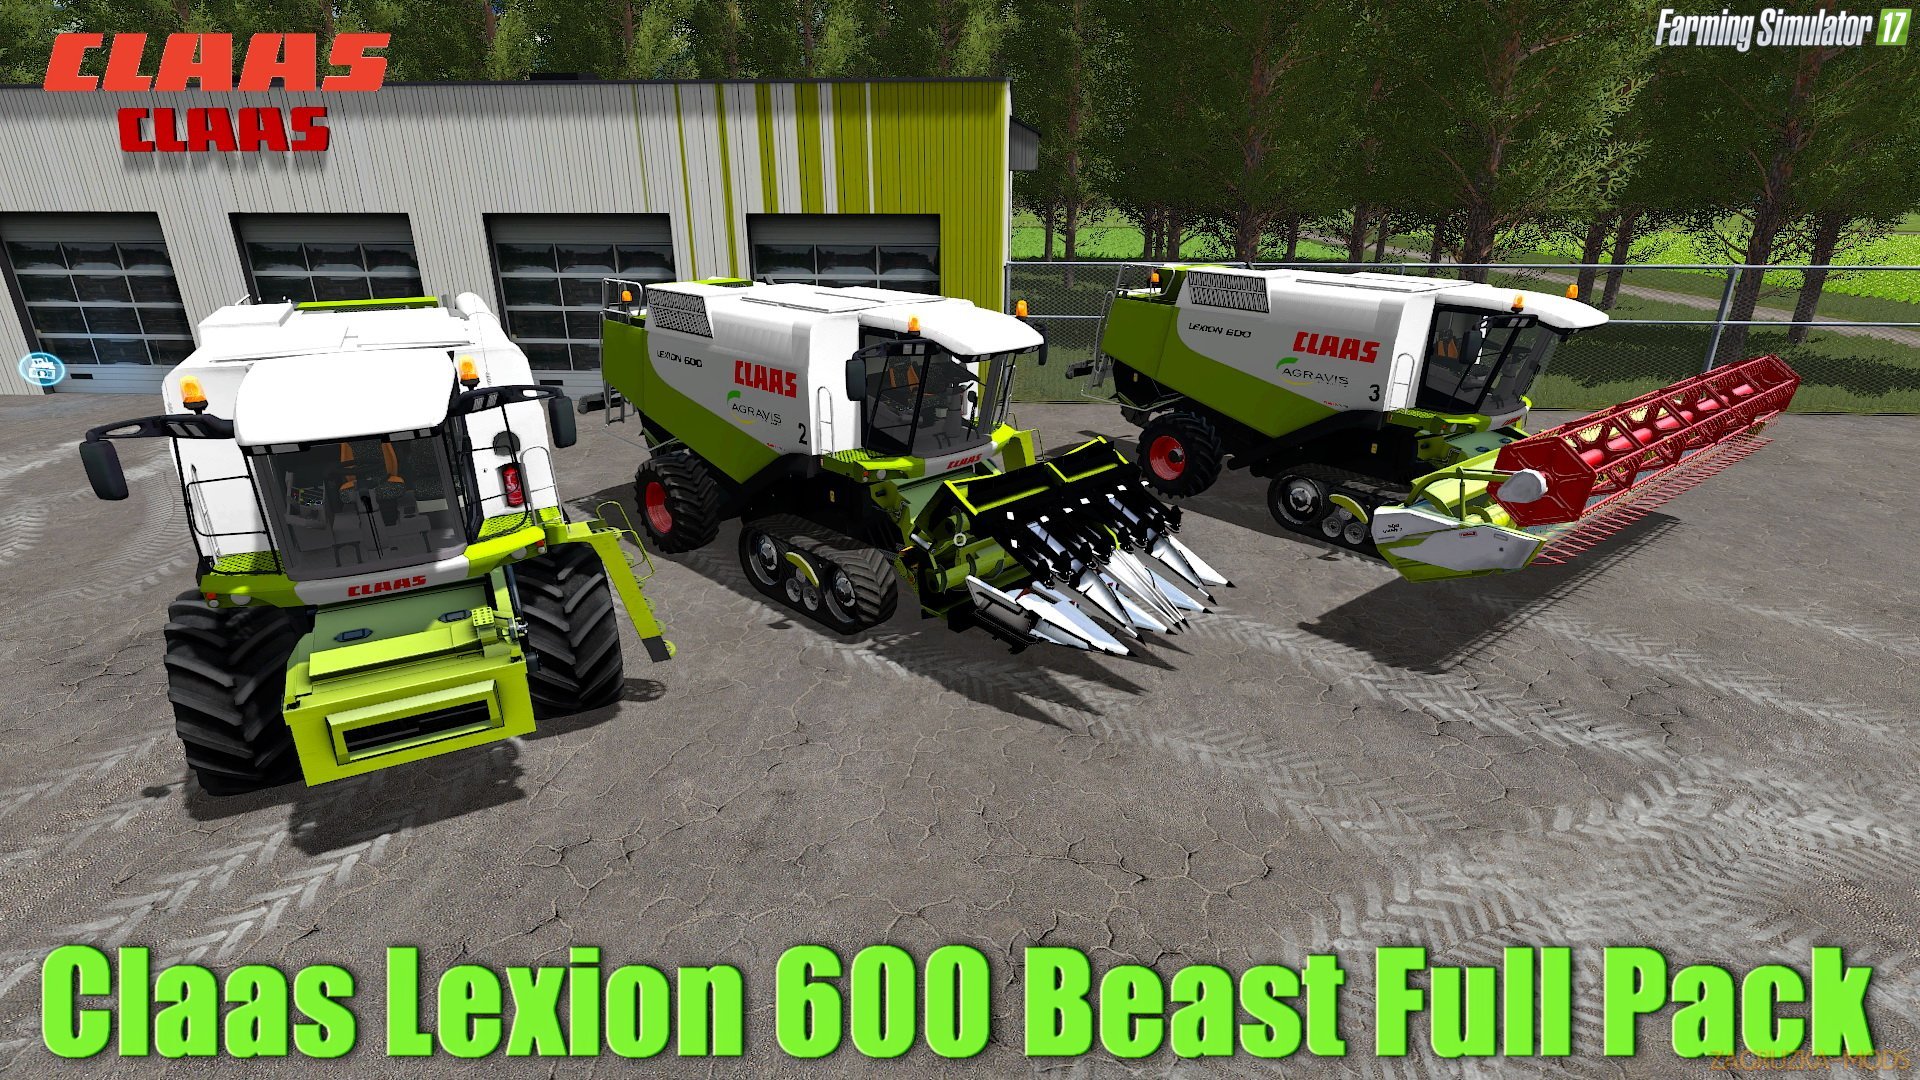 Claas Lexion 600 Beast Full Pack v2.0 for FS 17